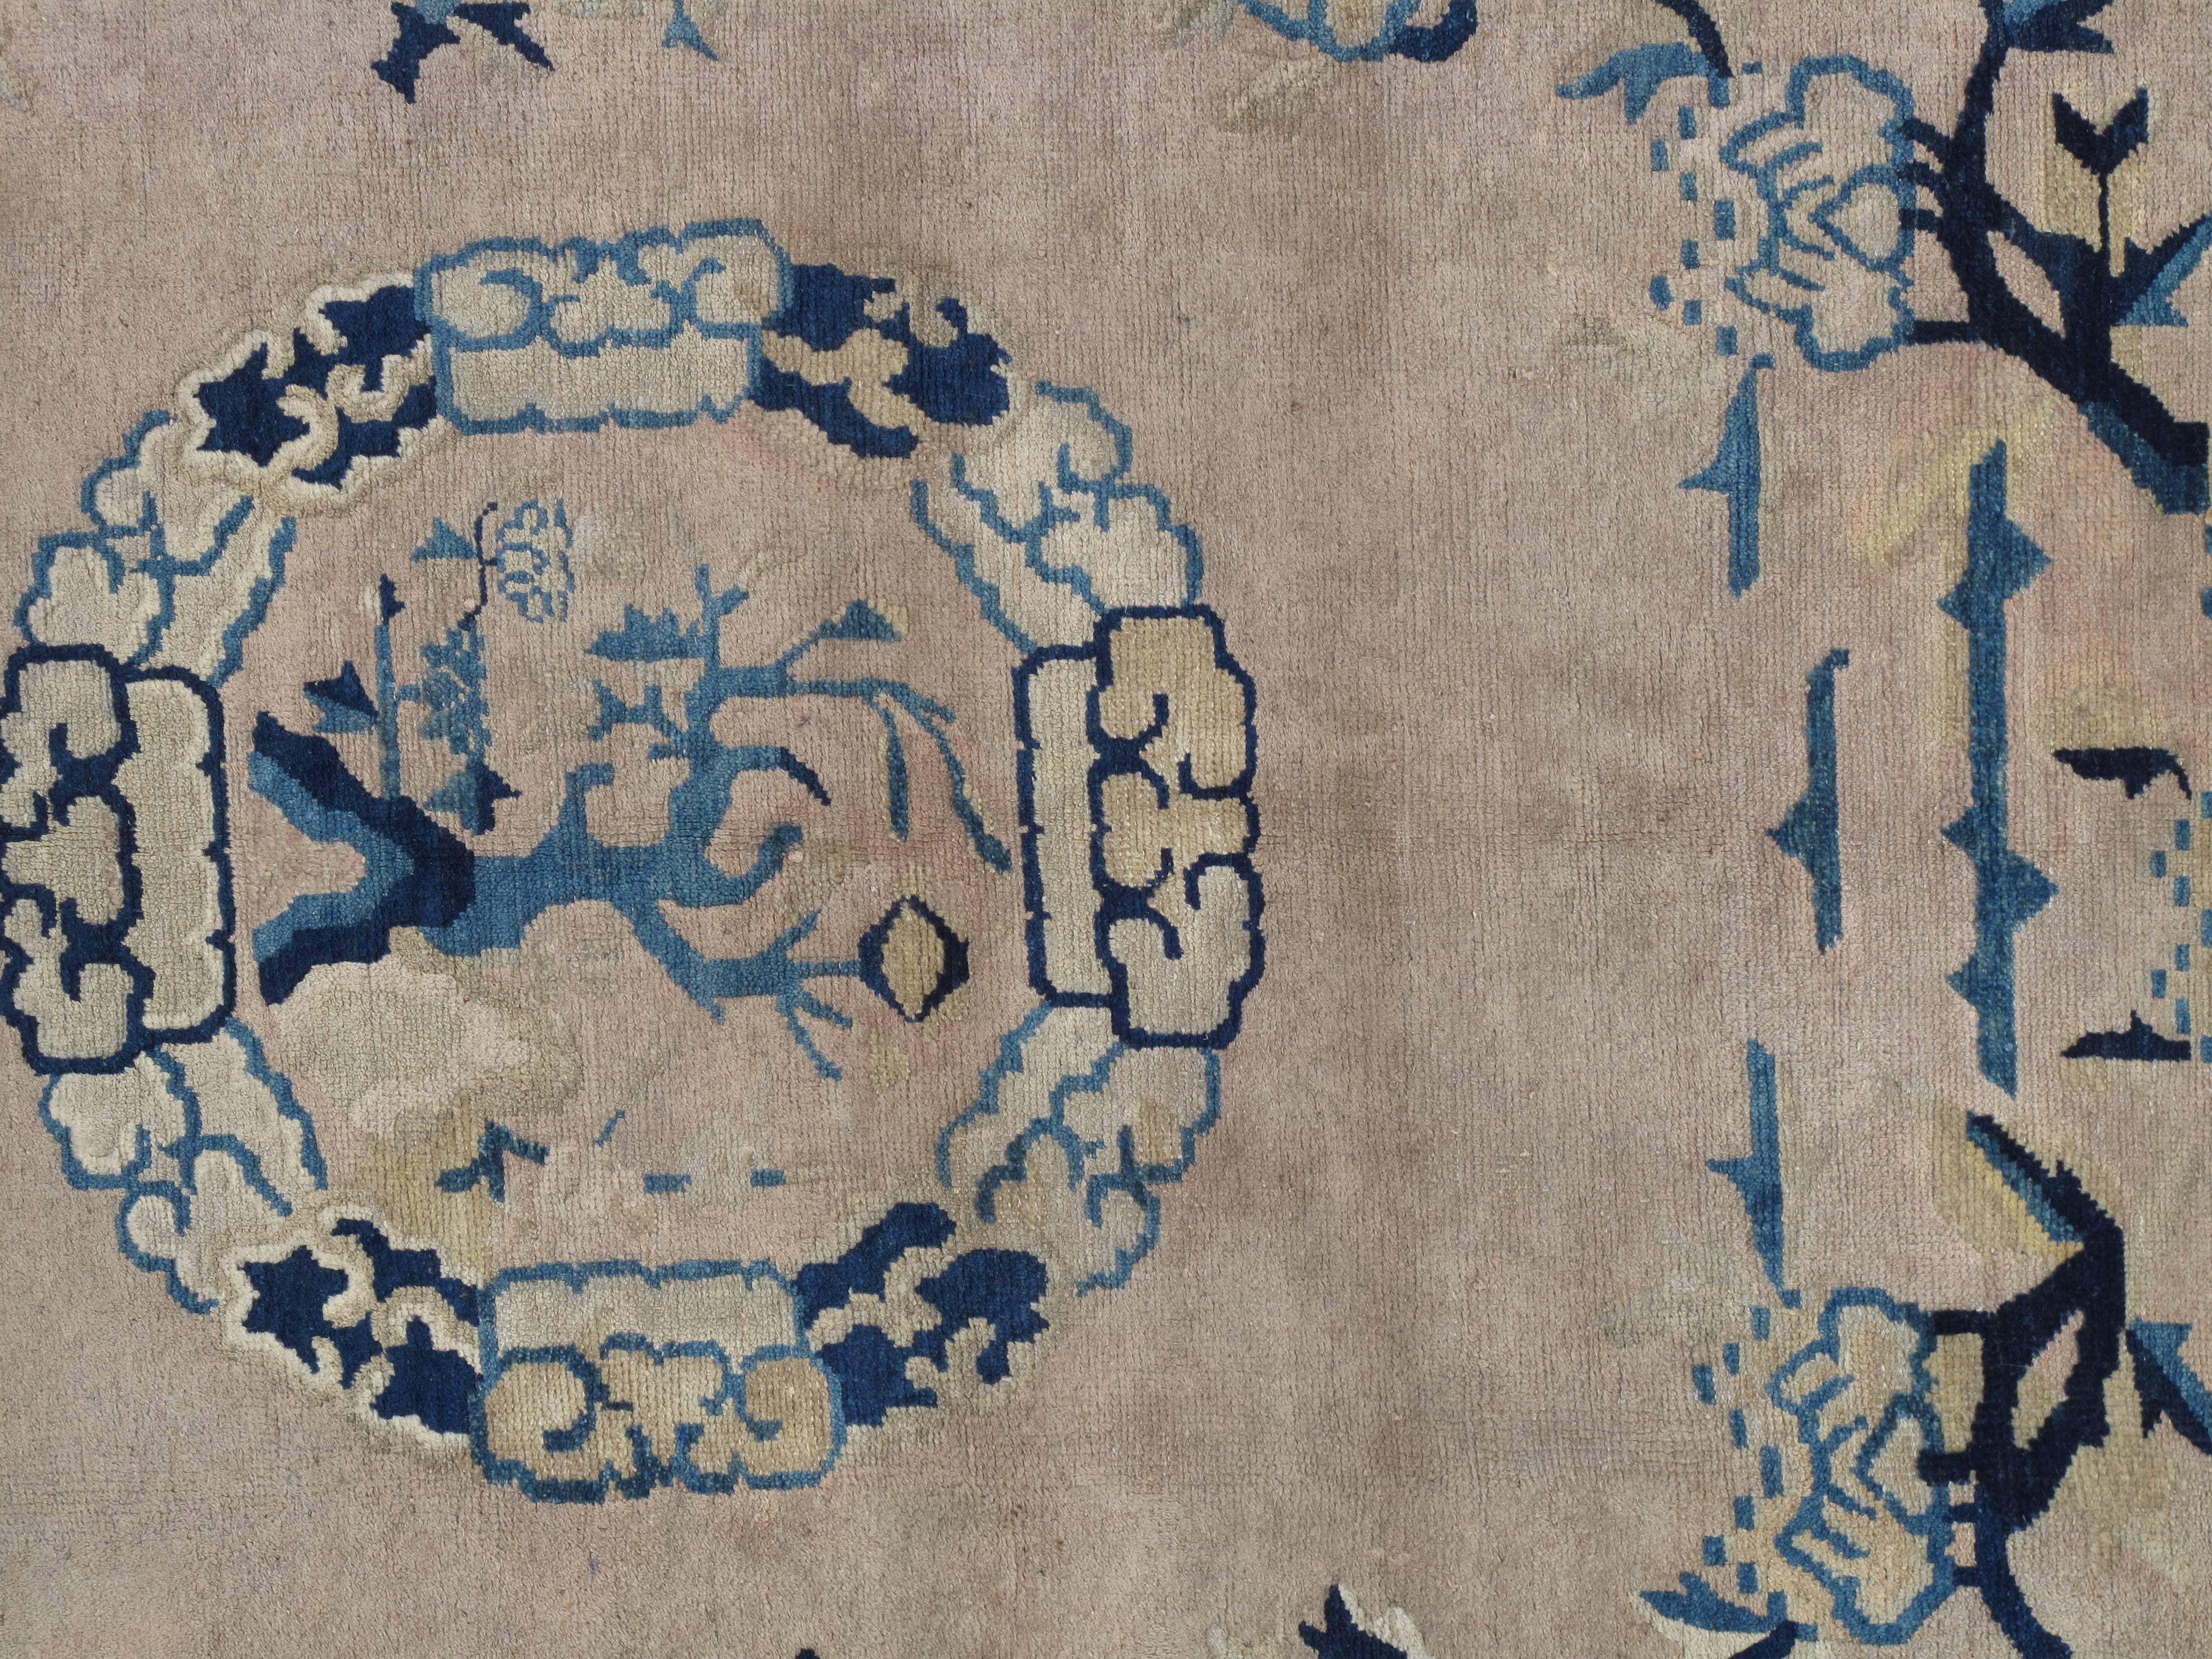 La Chine a une longue tradition de tapis et les originaux, probablement utilisés comme marchandises, sont datés de plus de 2000 ans. L'art de nouer les tapis a toutefois été introduit en Chine aux alentours du 15e siècle.
Les motifs de certains